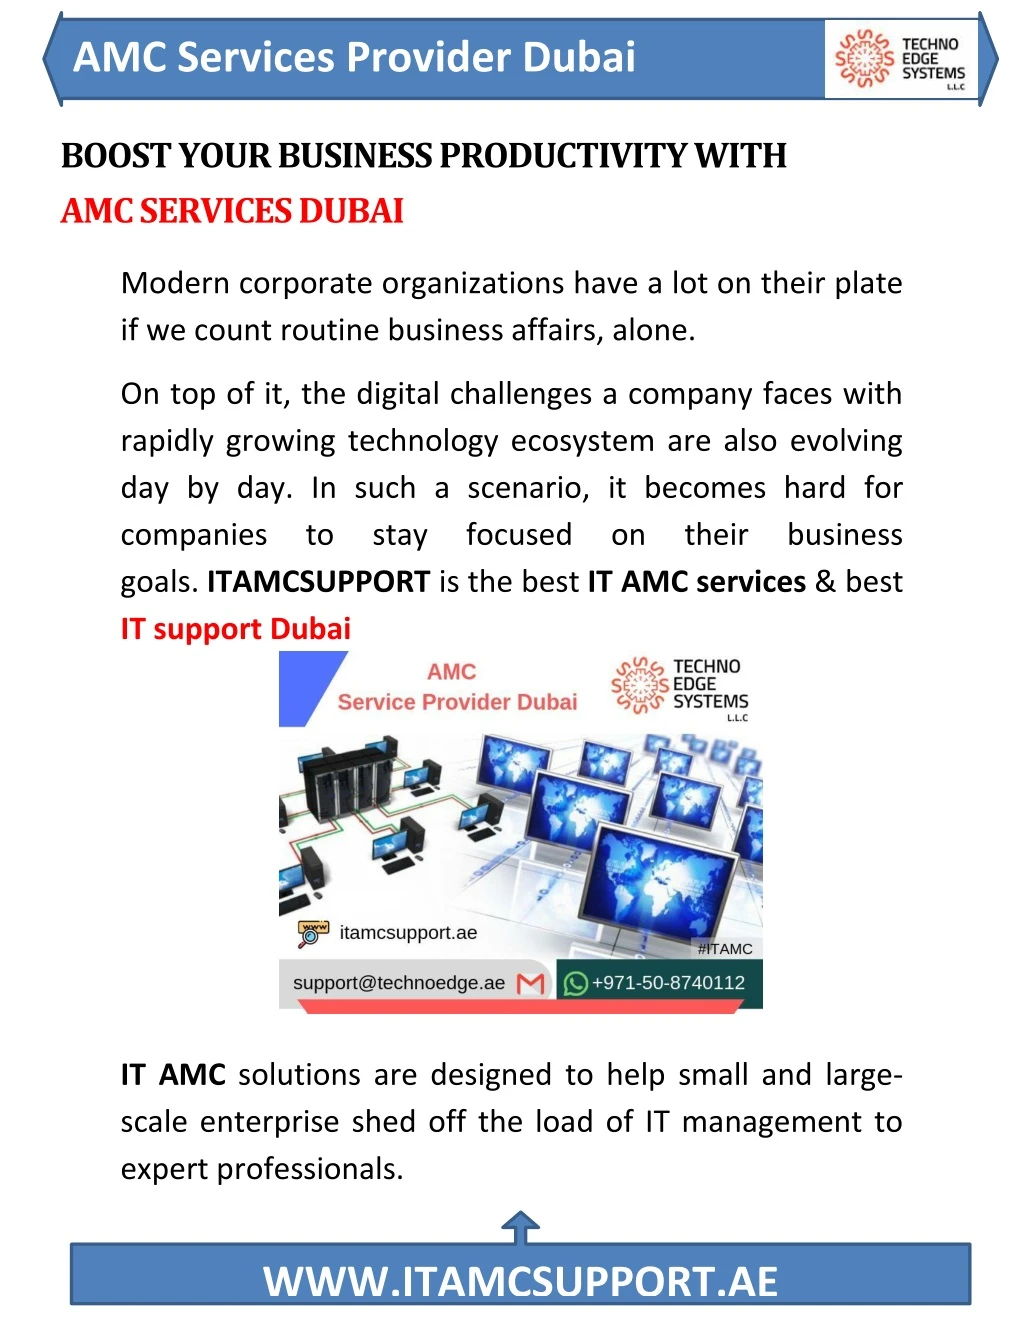 amc services provider dubai